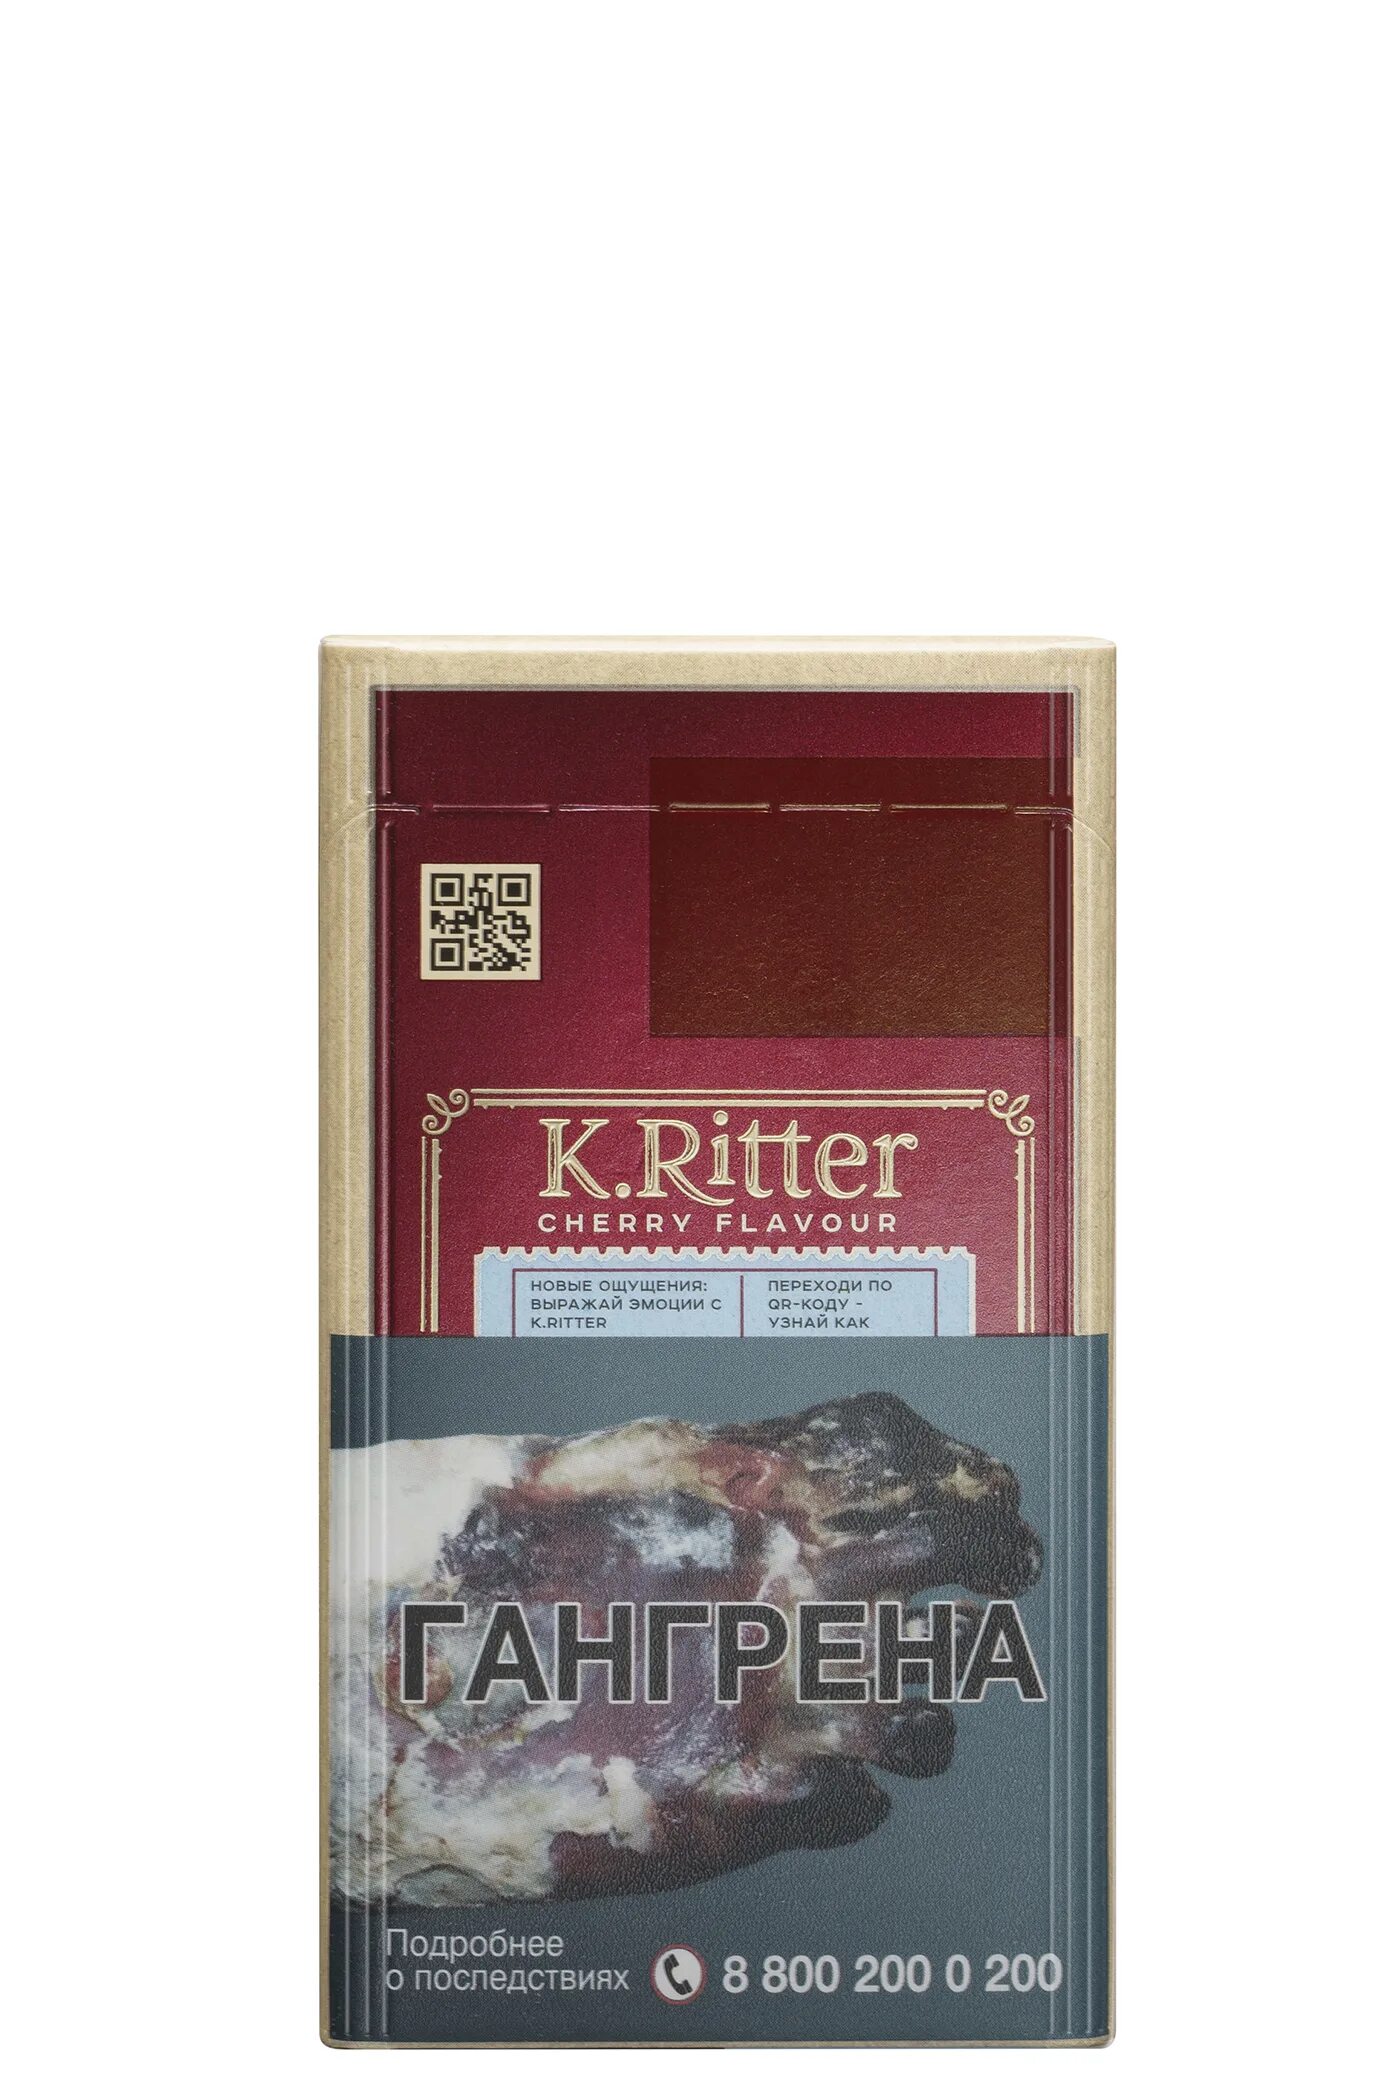 Сигареты k ritter купить. Сигареты k.Ritter компакт. Сигареты к.Риттер компакт вишня. Сигареты k.Ritter вишня компакт. Сигареты к.Риттер компакт вишня (20).